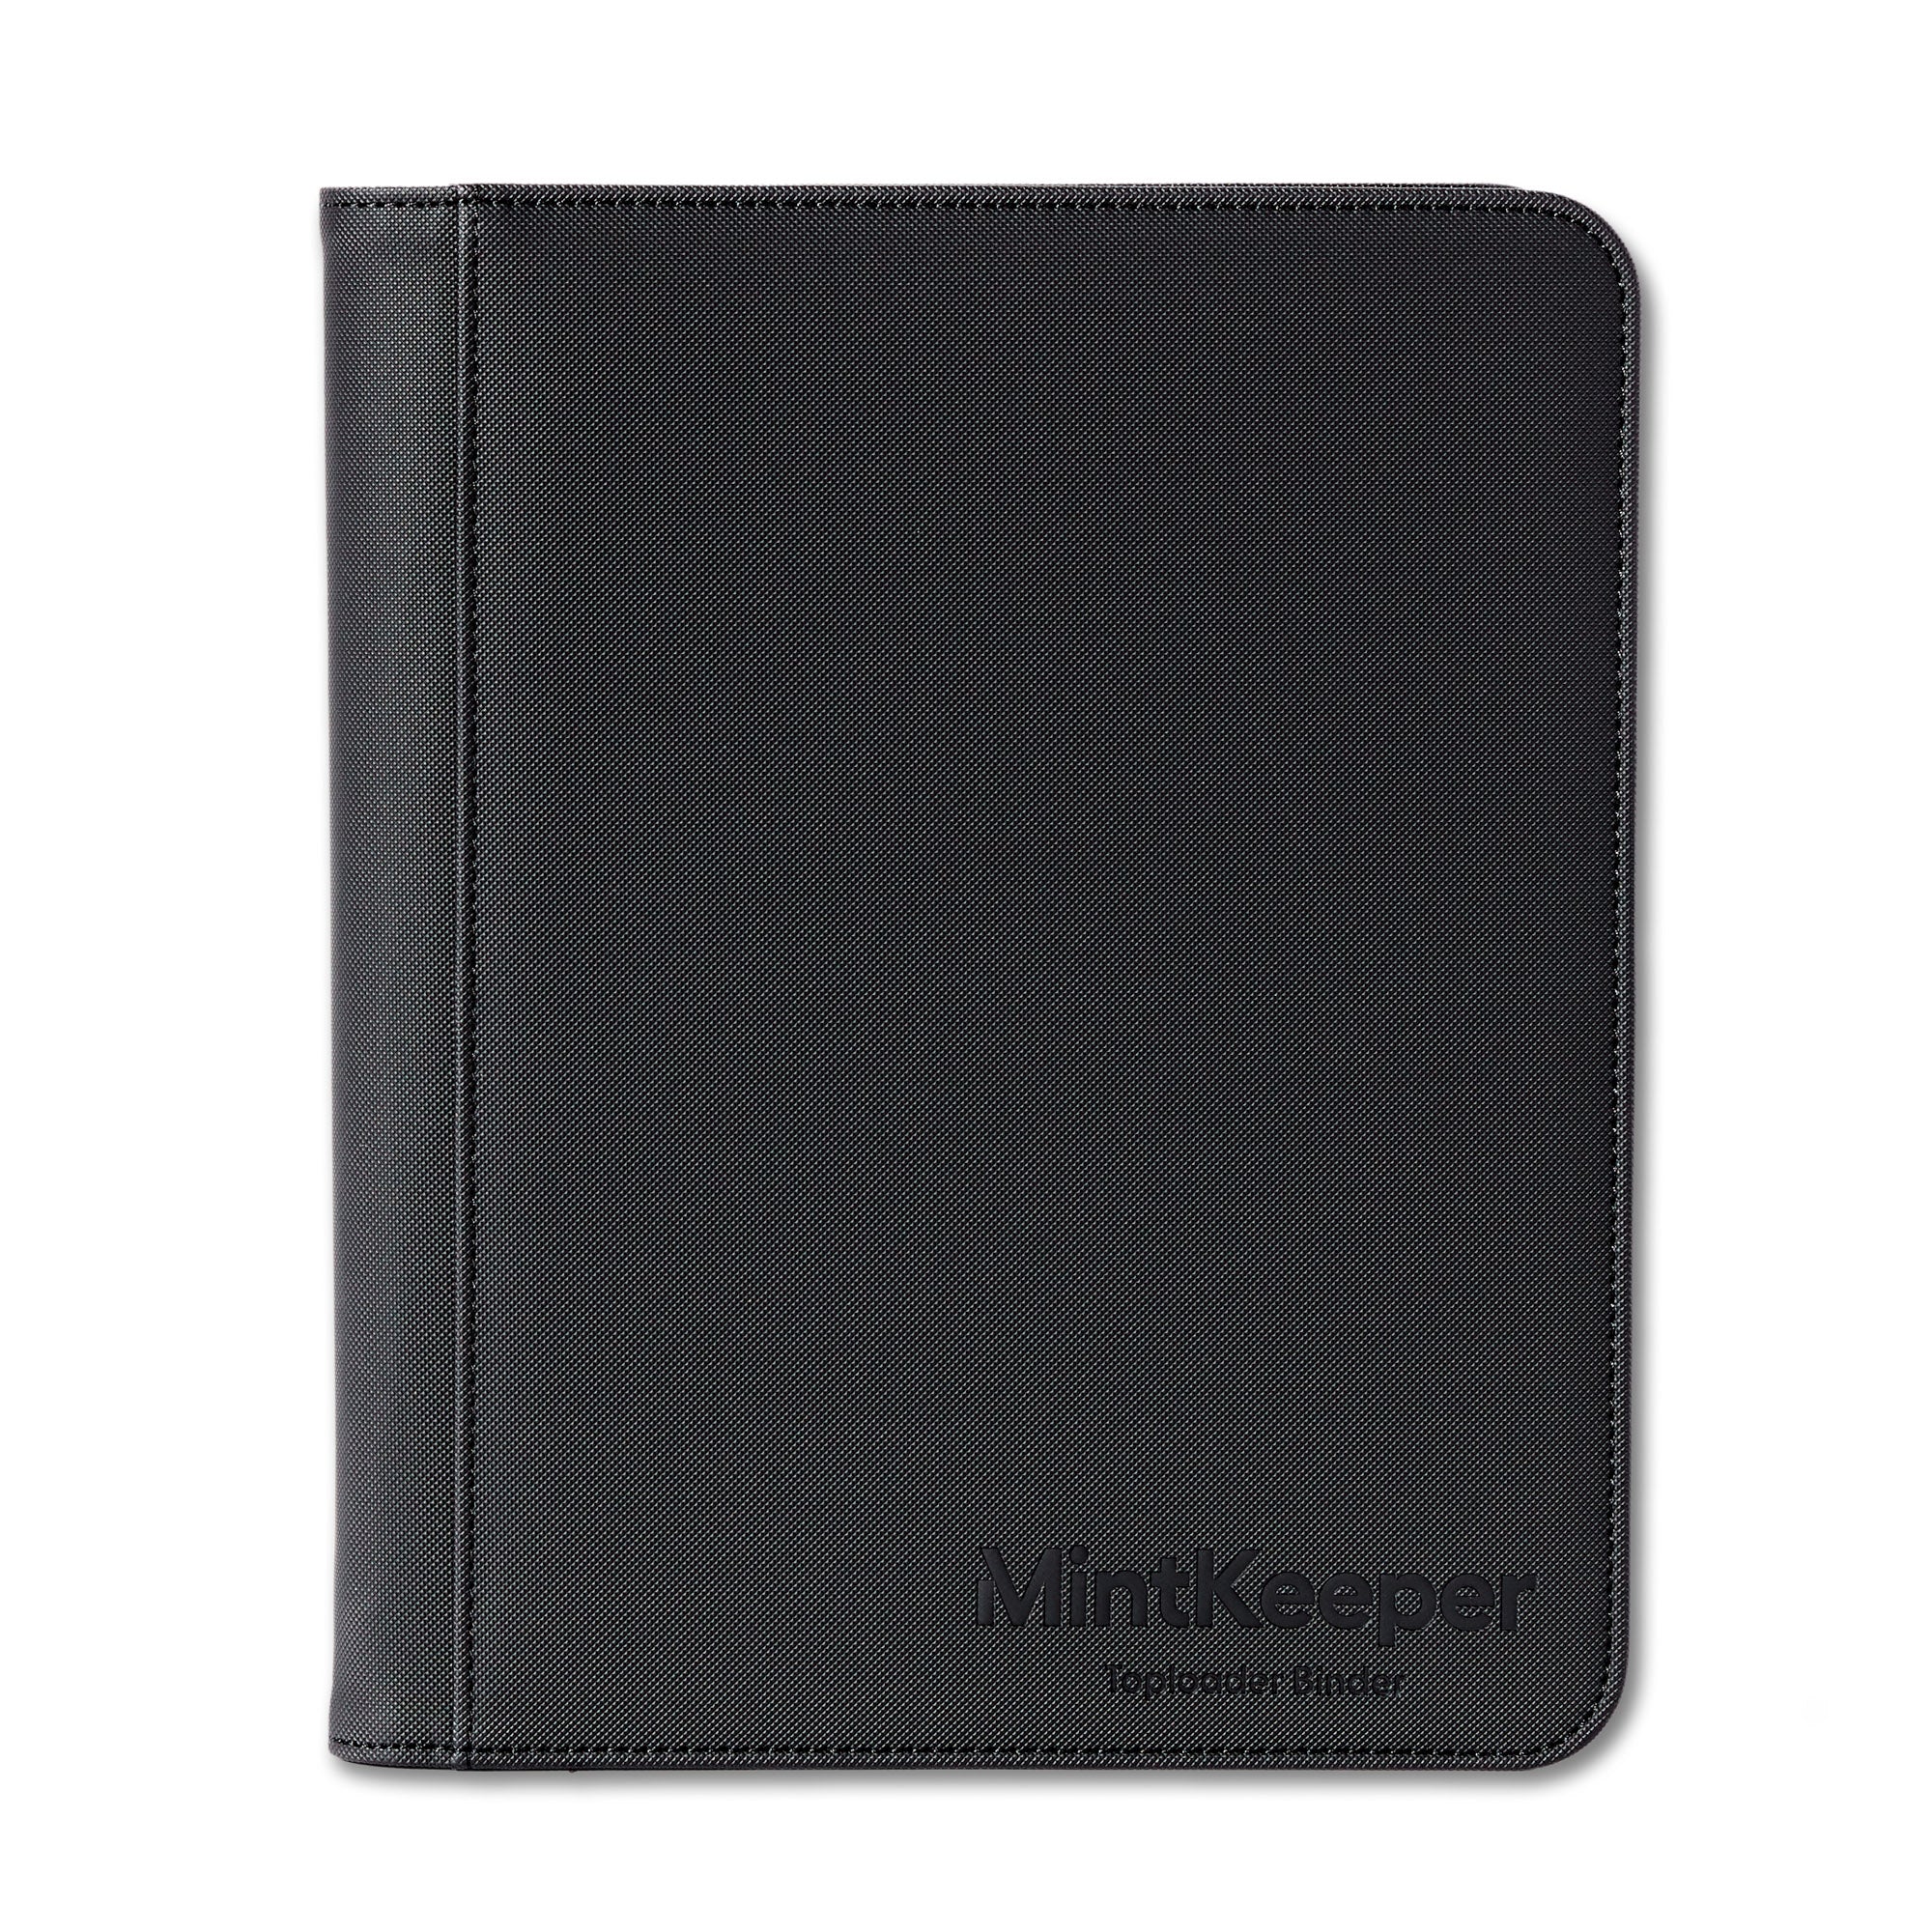 MintKeeper - Toploader Binder - 4 Pocket